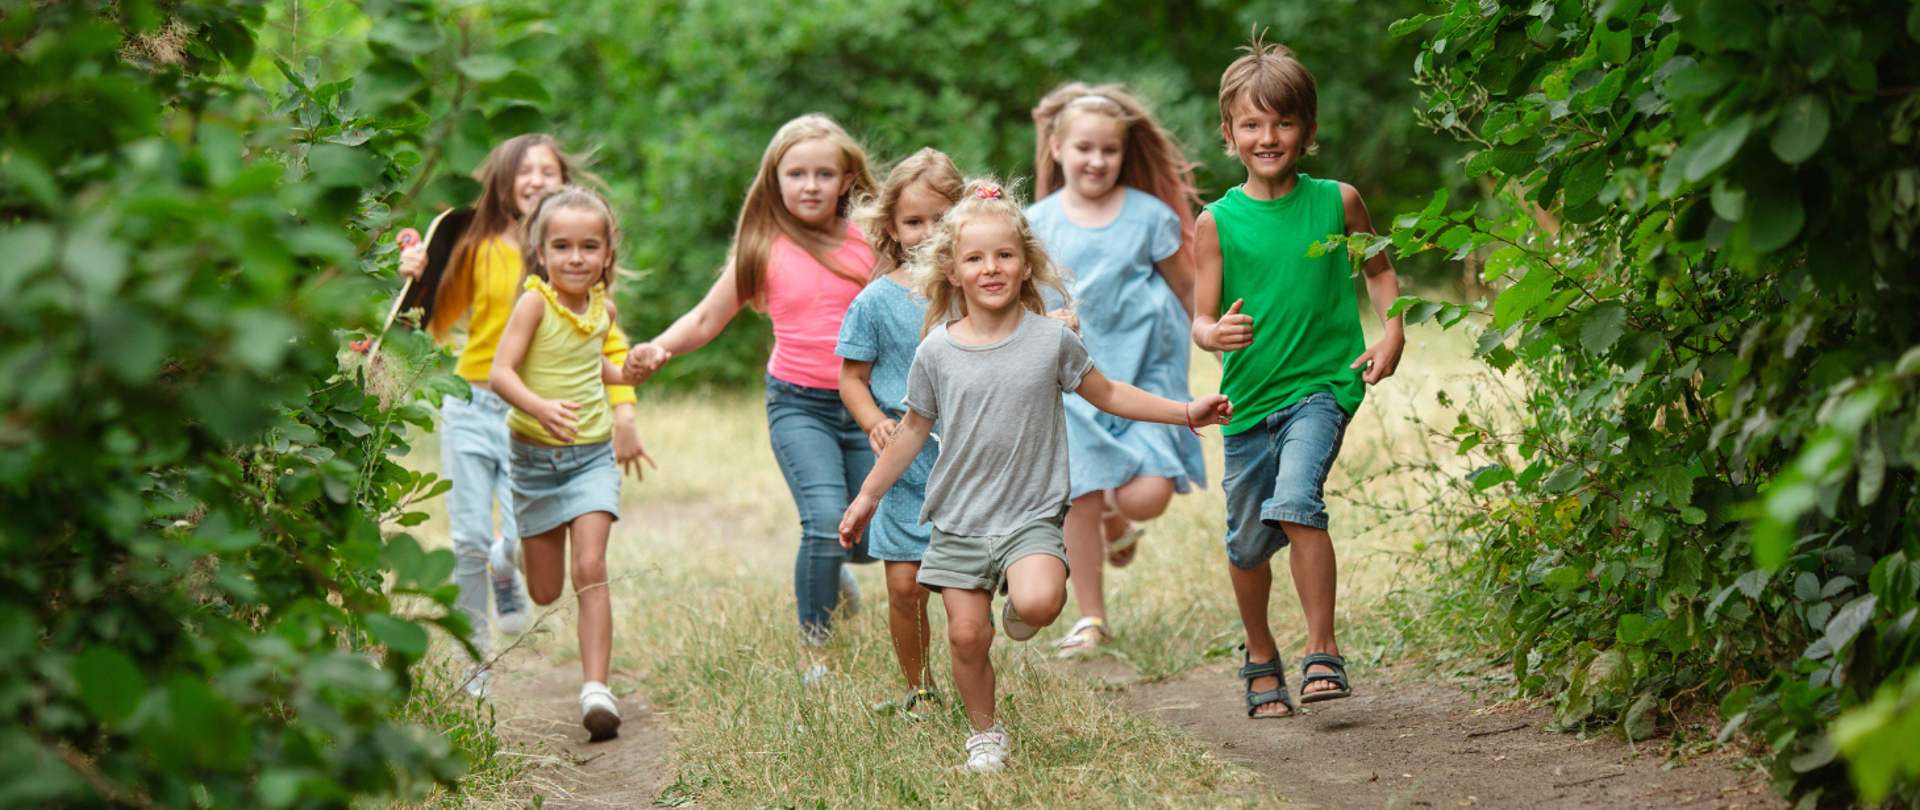 Grupa dzieci biegnie ścieżką wśród drzew i krzewów